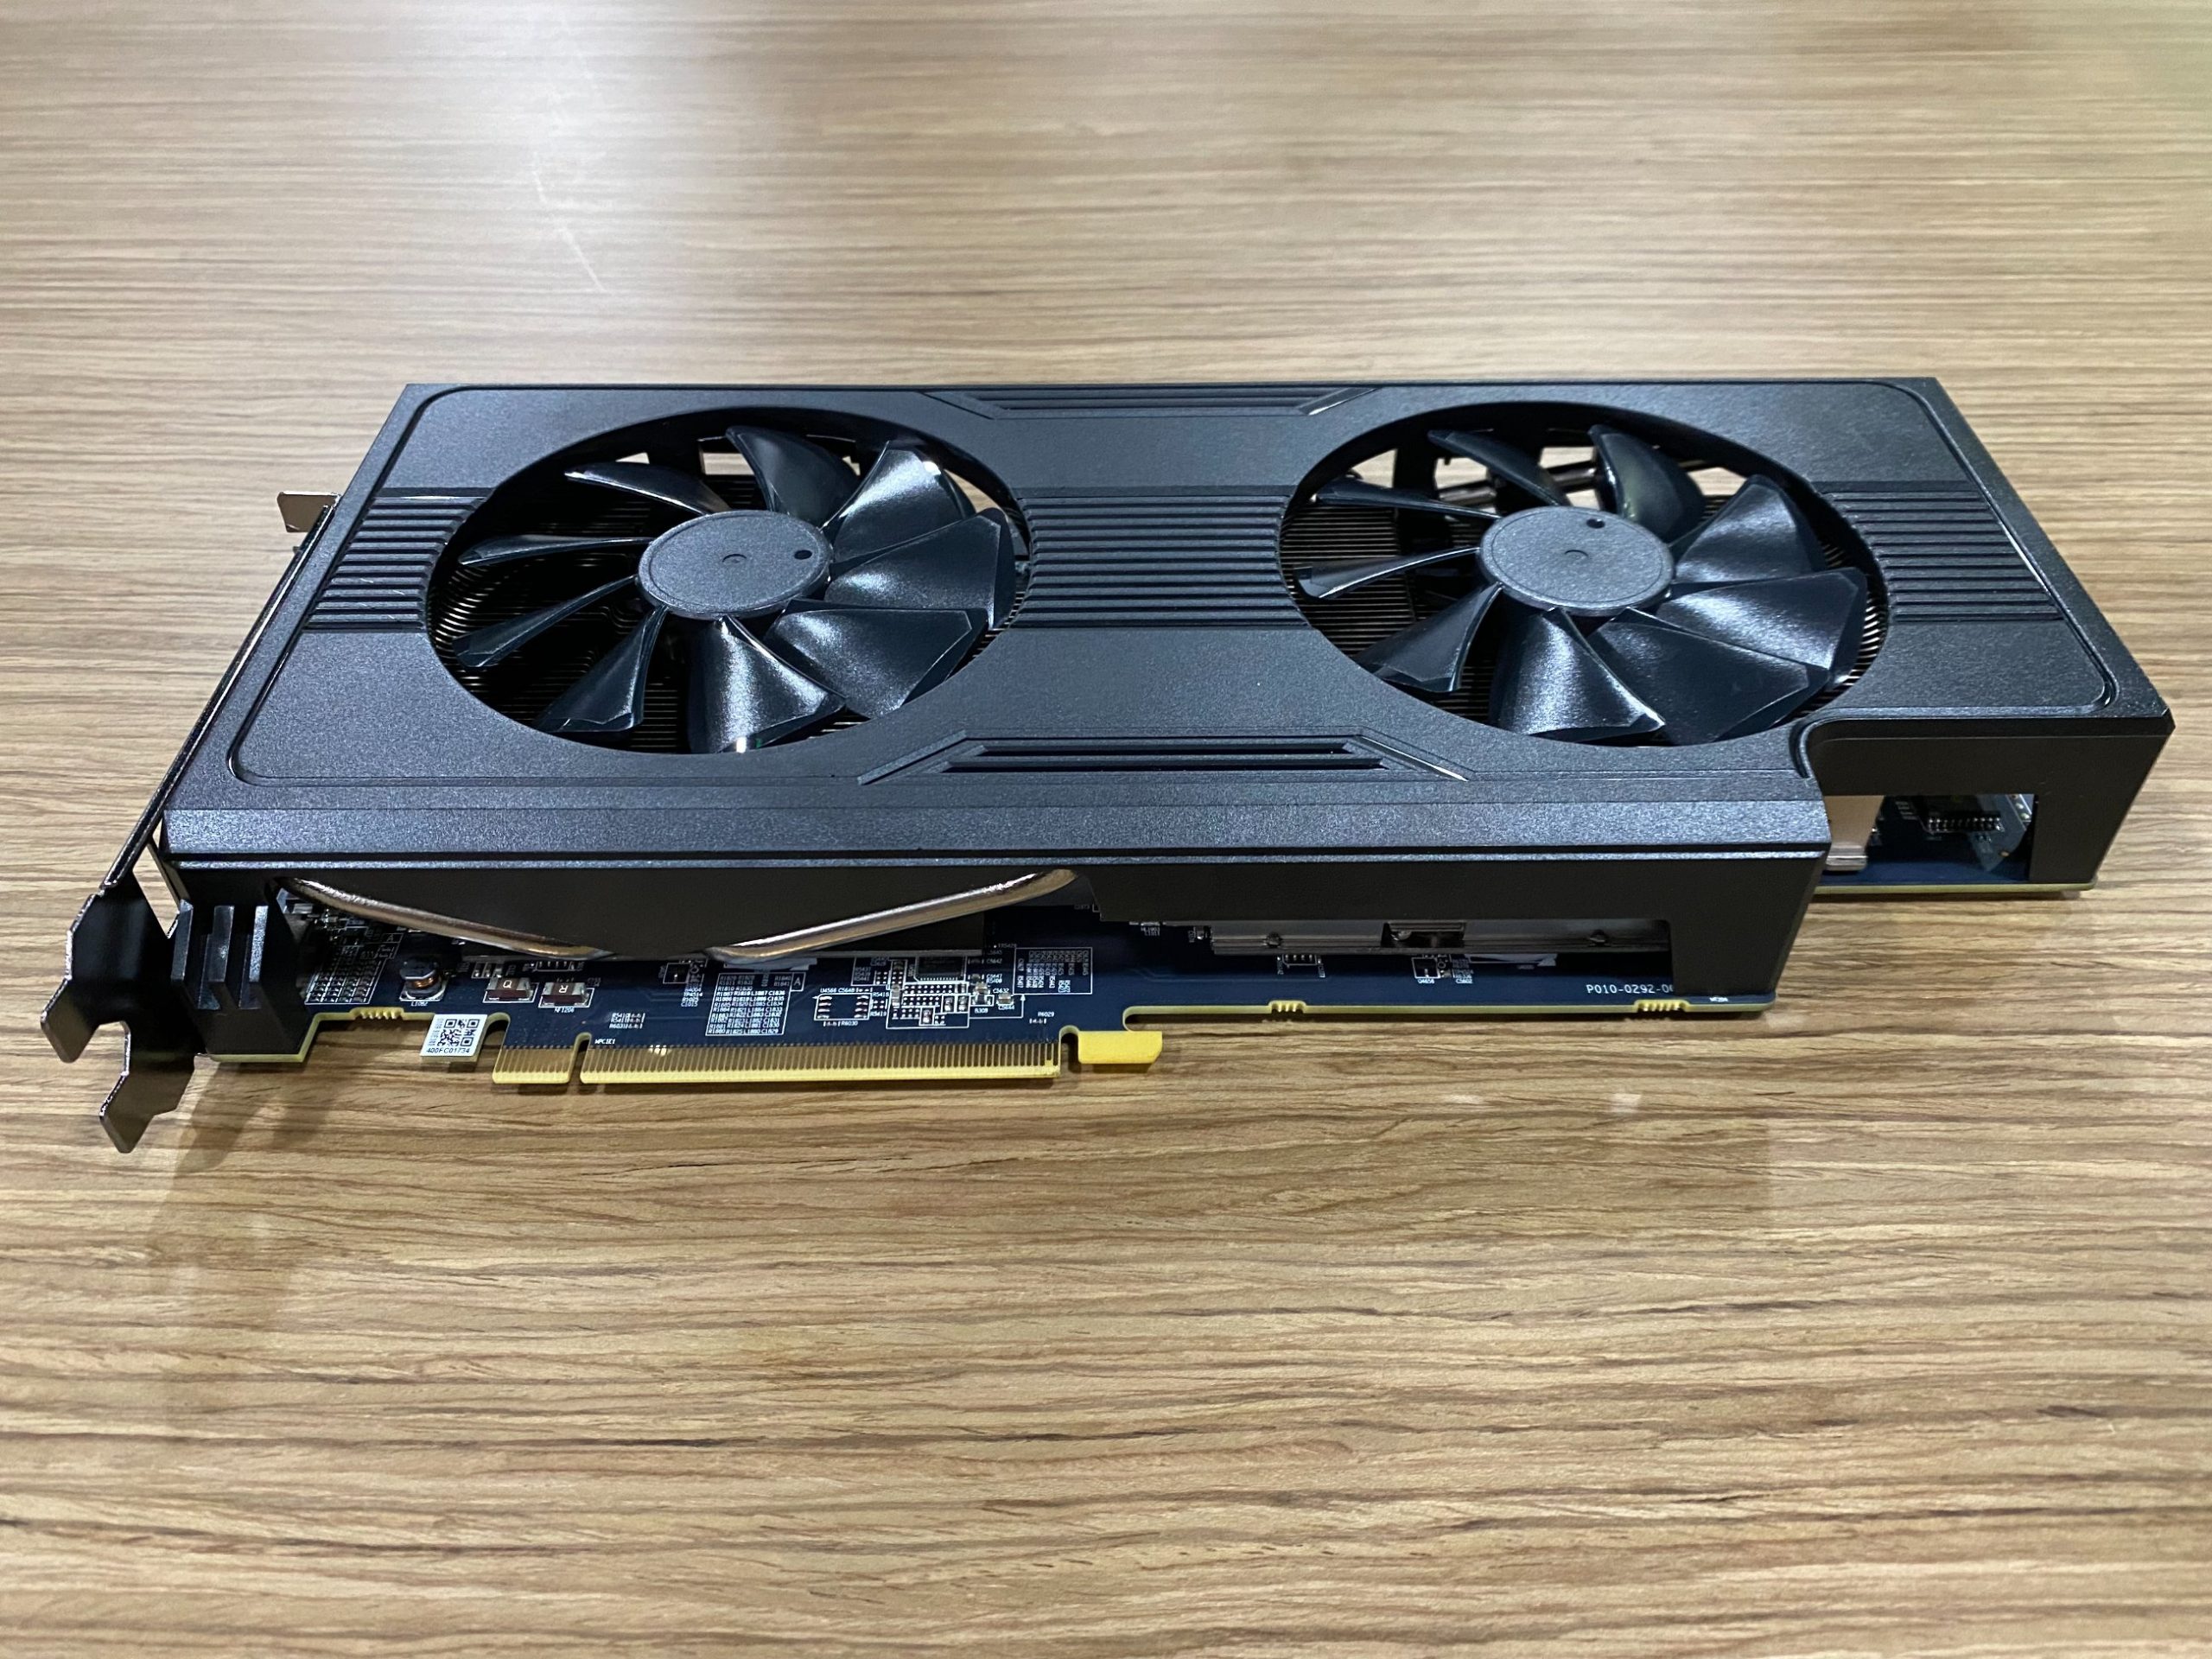 Madencilik İçin Tasarlanan Çift GPU'lu RX 570 Modeli Ortaya Çıktı -  Technopat